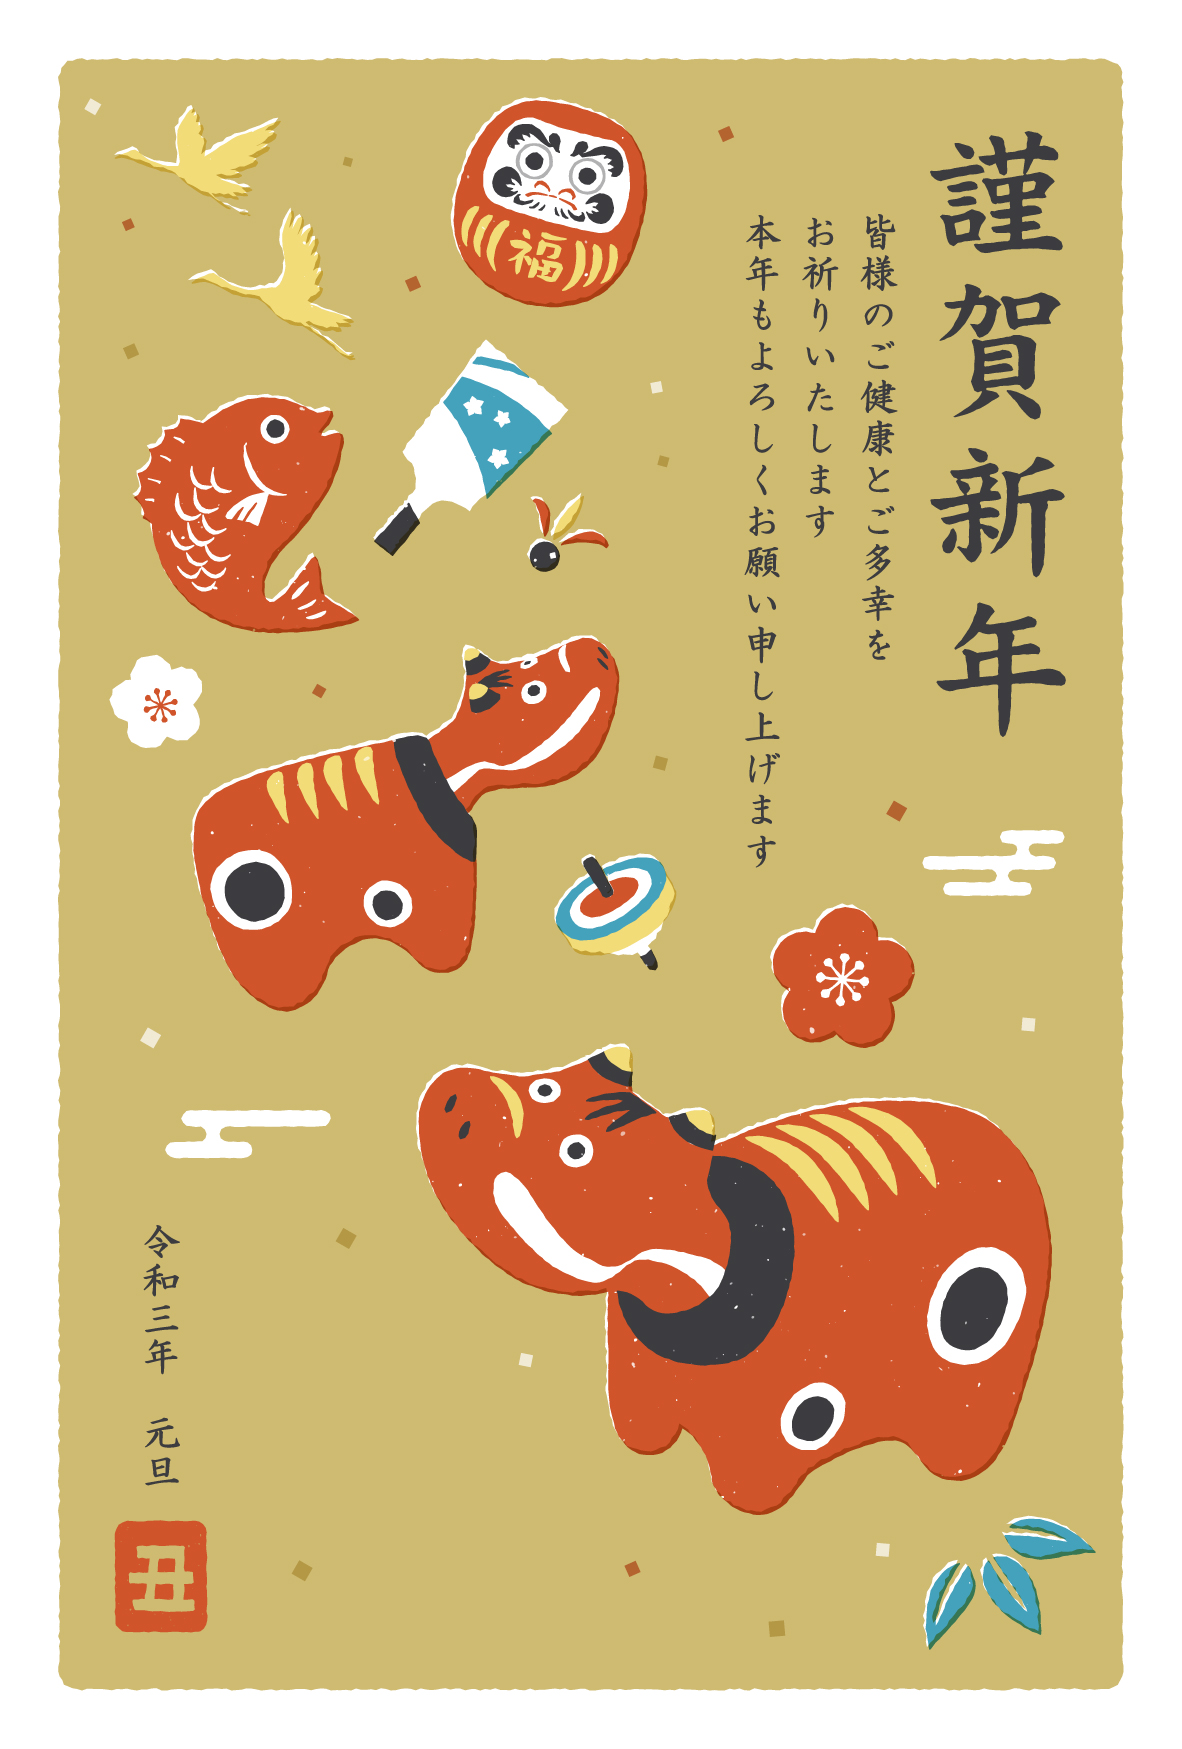 Nengajou: Hãy chào đón năm mới với Nengajou - truyền thống viết thiệp chúc tết của người Nhật Bản. Nengajou không chỉ được sử dụng để bày tỏ tình cảm đối với gia đình, bạn bè mà còn là cách để kết nối những người thân yêu. Hãy thử viết và gửi một bức thiệp Nengajou đến những người mà bạn yêu thương, đó là cách để tạo ra những kỷ niệm đẹp về năm mới.